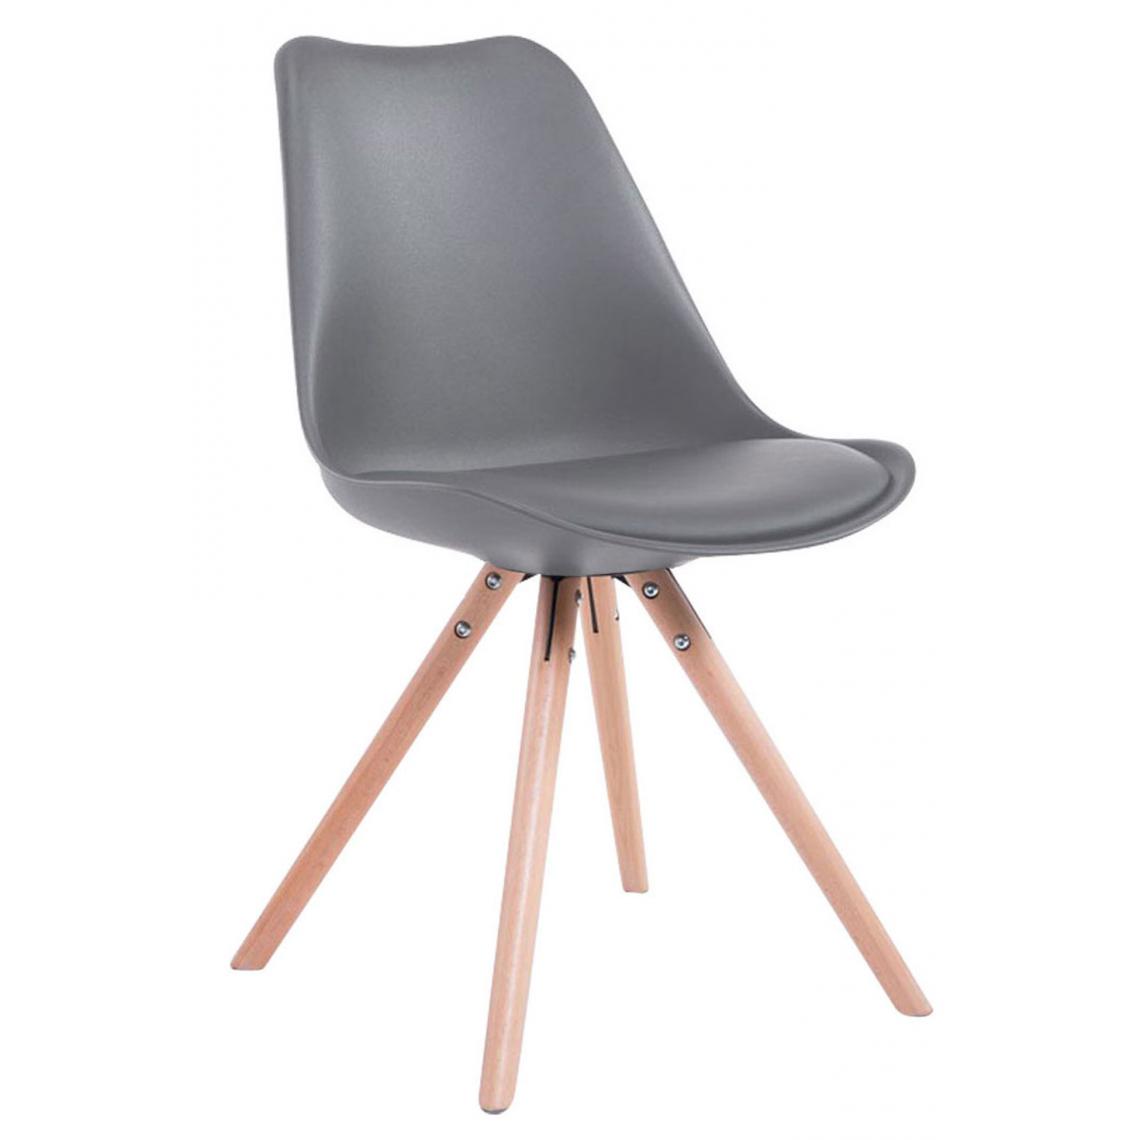 Icaverne - Moderne Chaise visiteur selection Katmandou en simili cuir rond Natura (chêne) couleur gris - Chaises